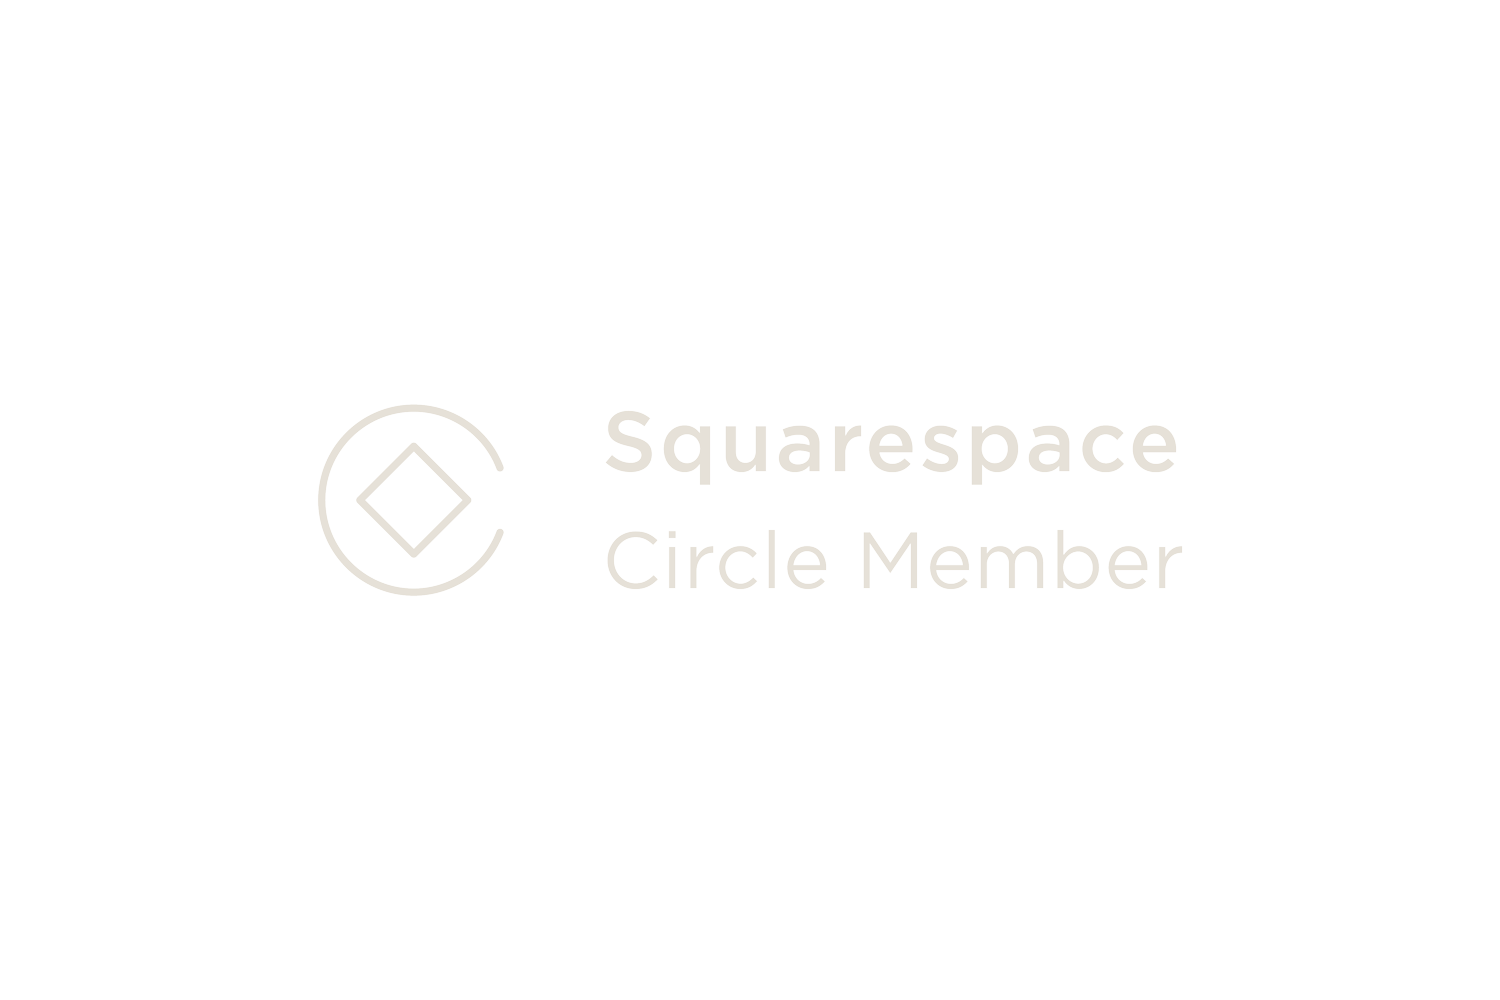 sqsp-circle-member-logo.png